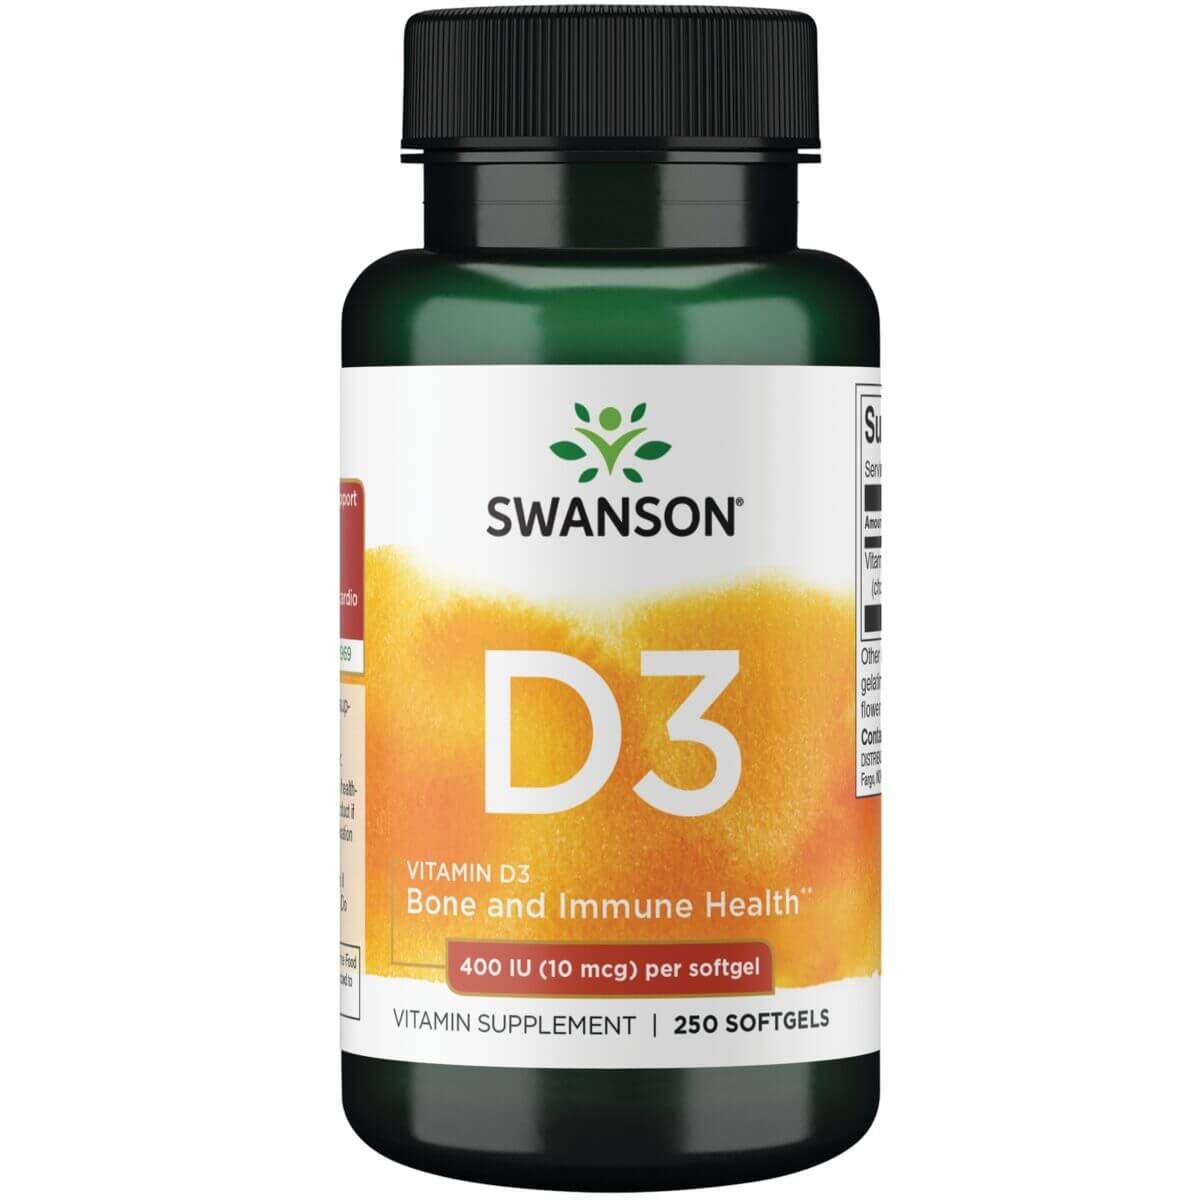 Photos - Vitamins & Minerals Swanson Vitamin D 400 Iu  250 Softgels VH-SWO-2520 (10 mcg)